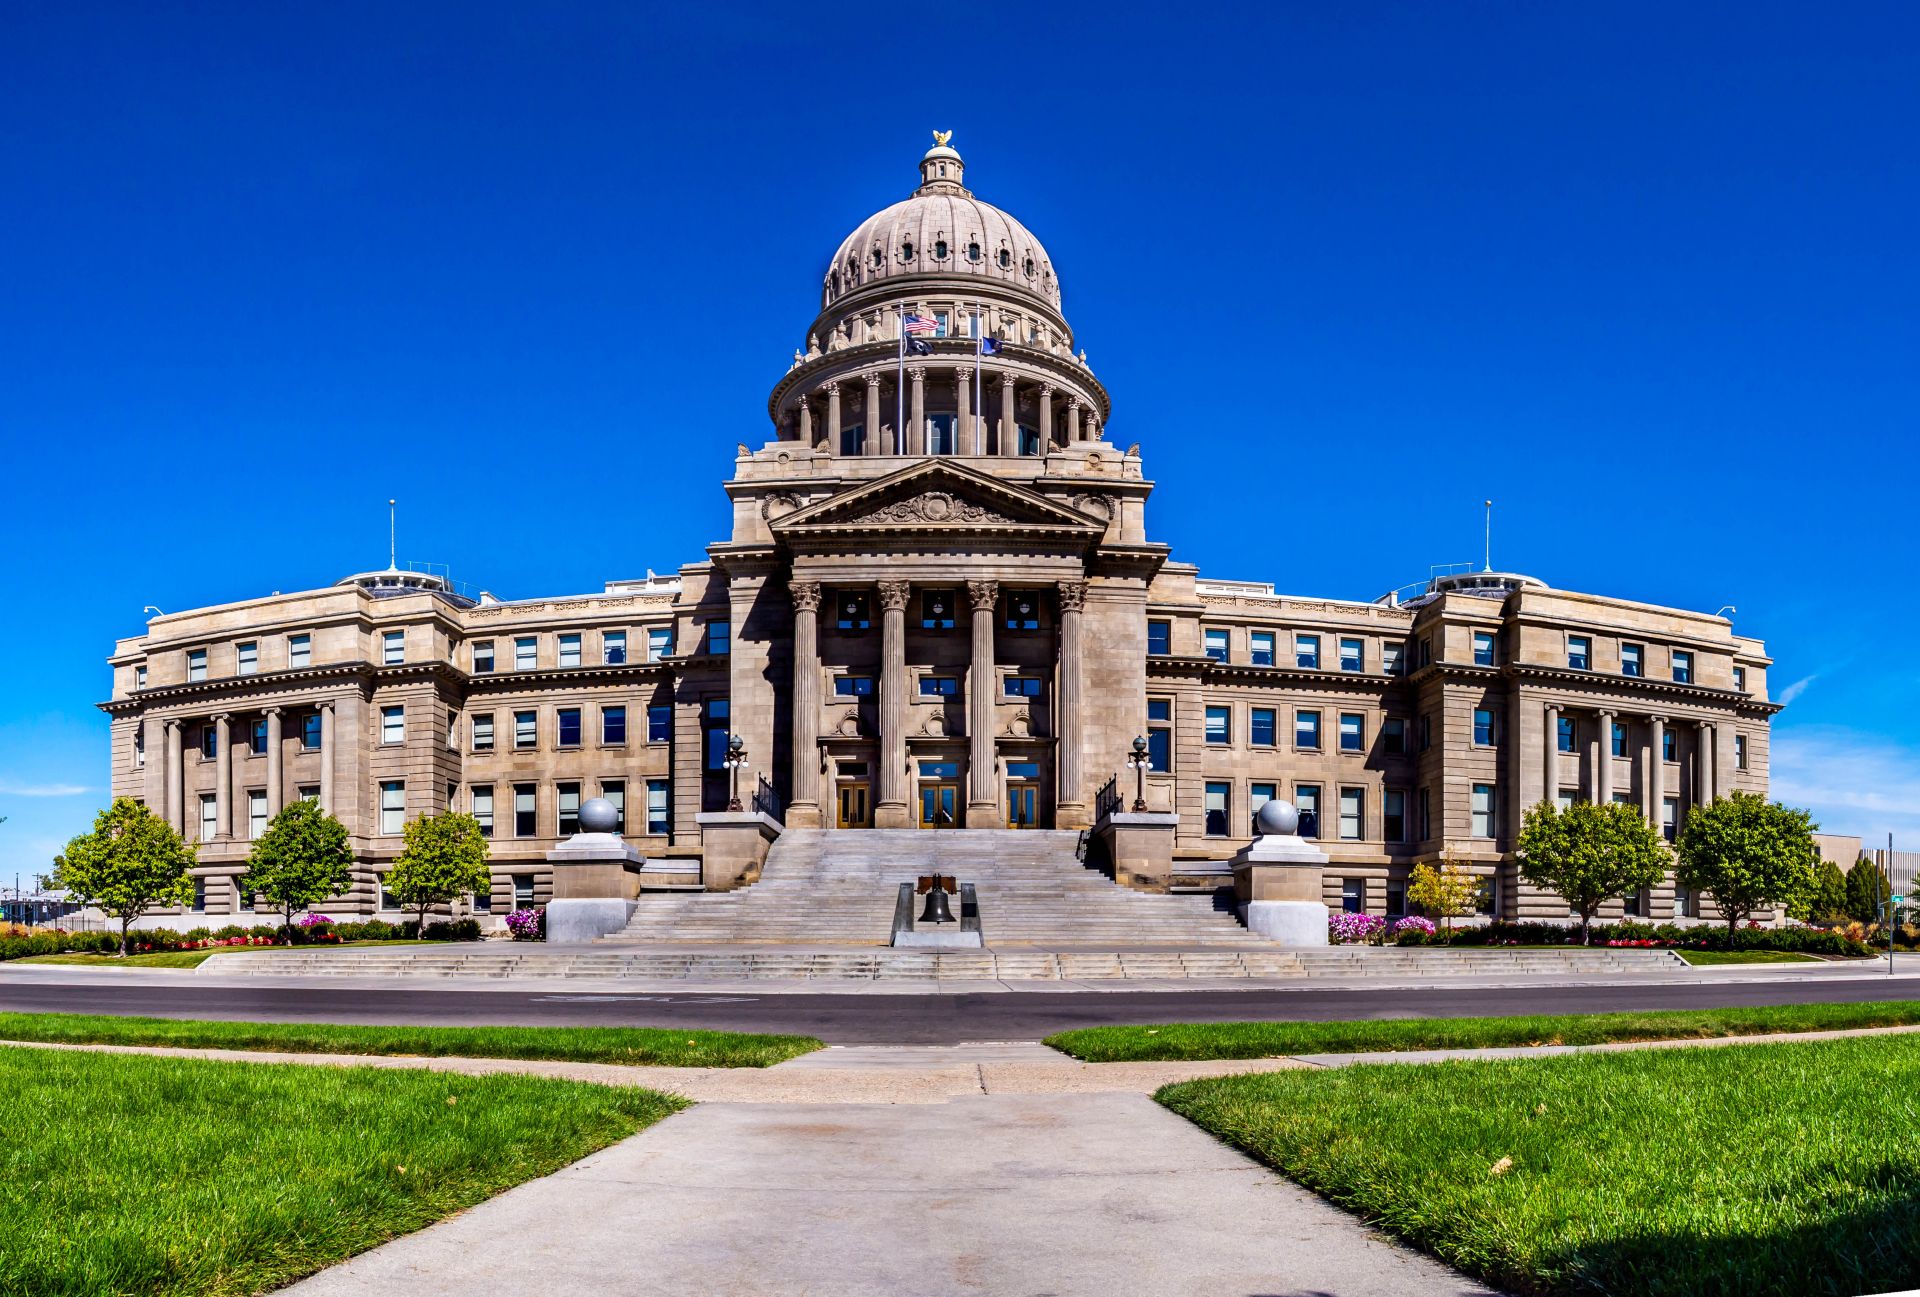 Image de la capitale de l'État de l'Idaho vue dans une vue panoramique.